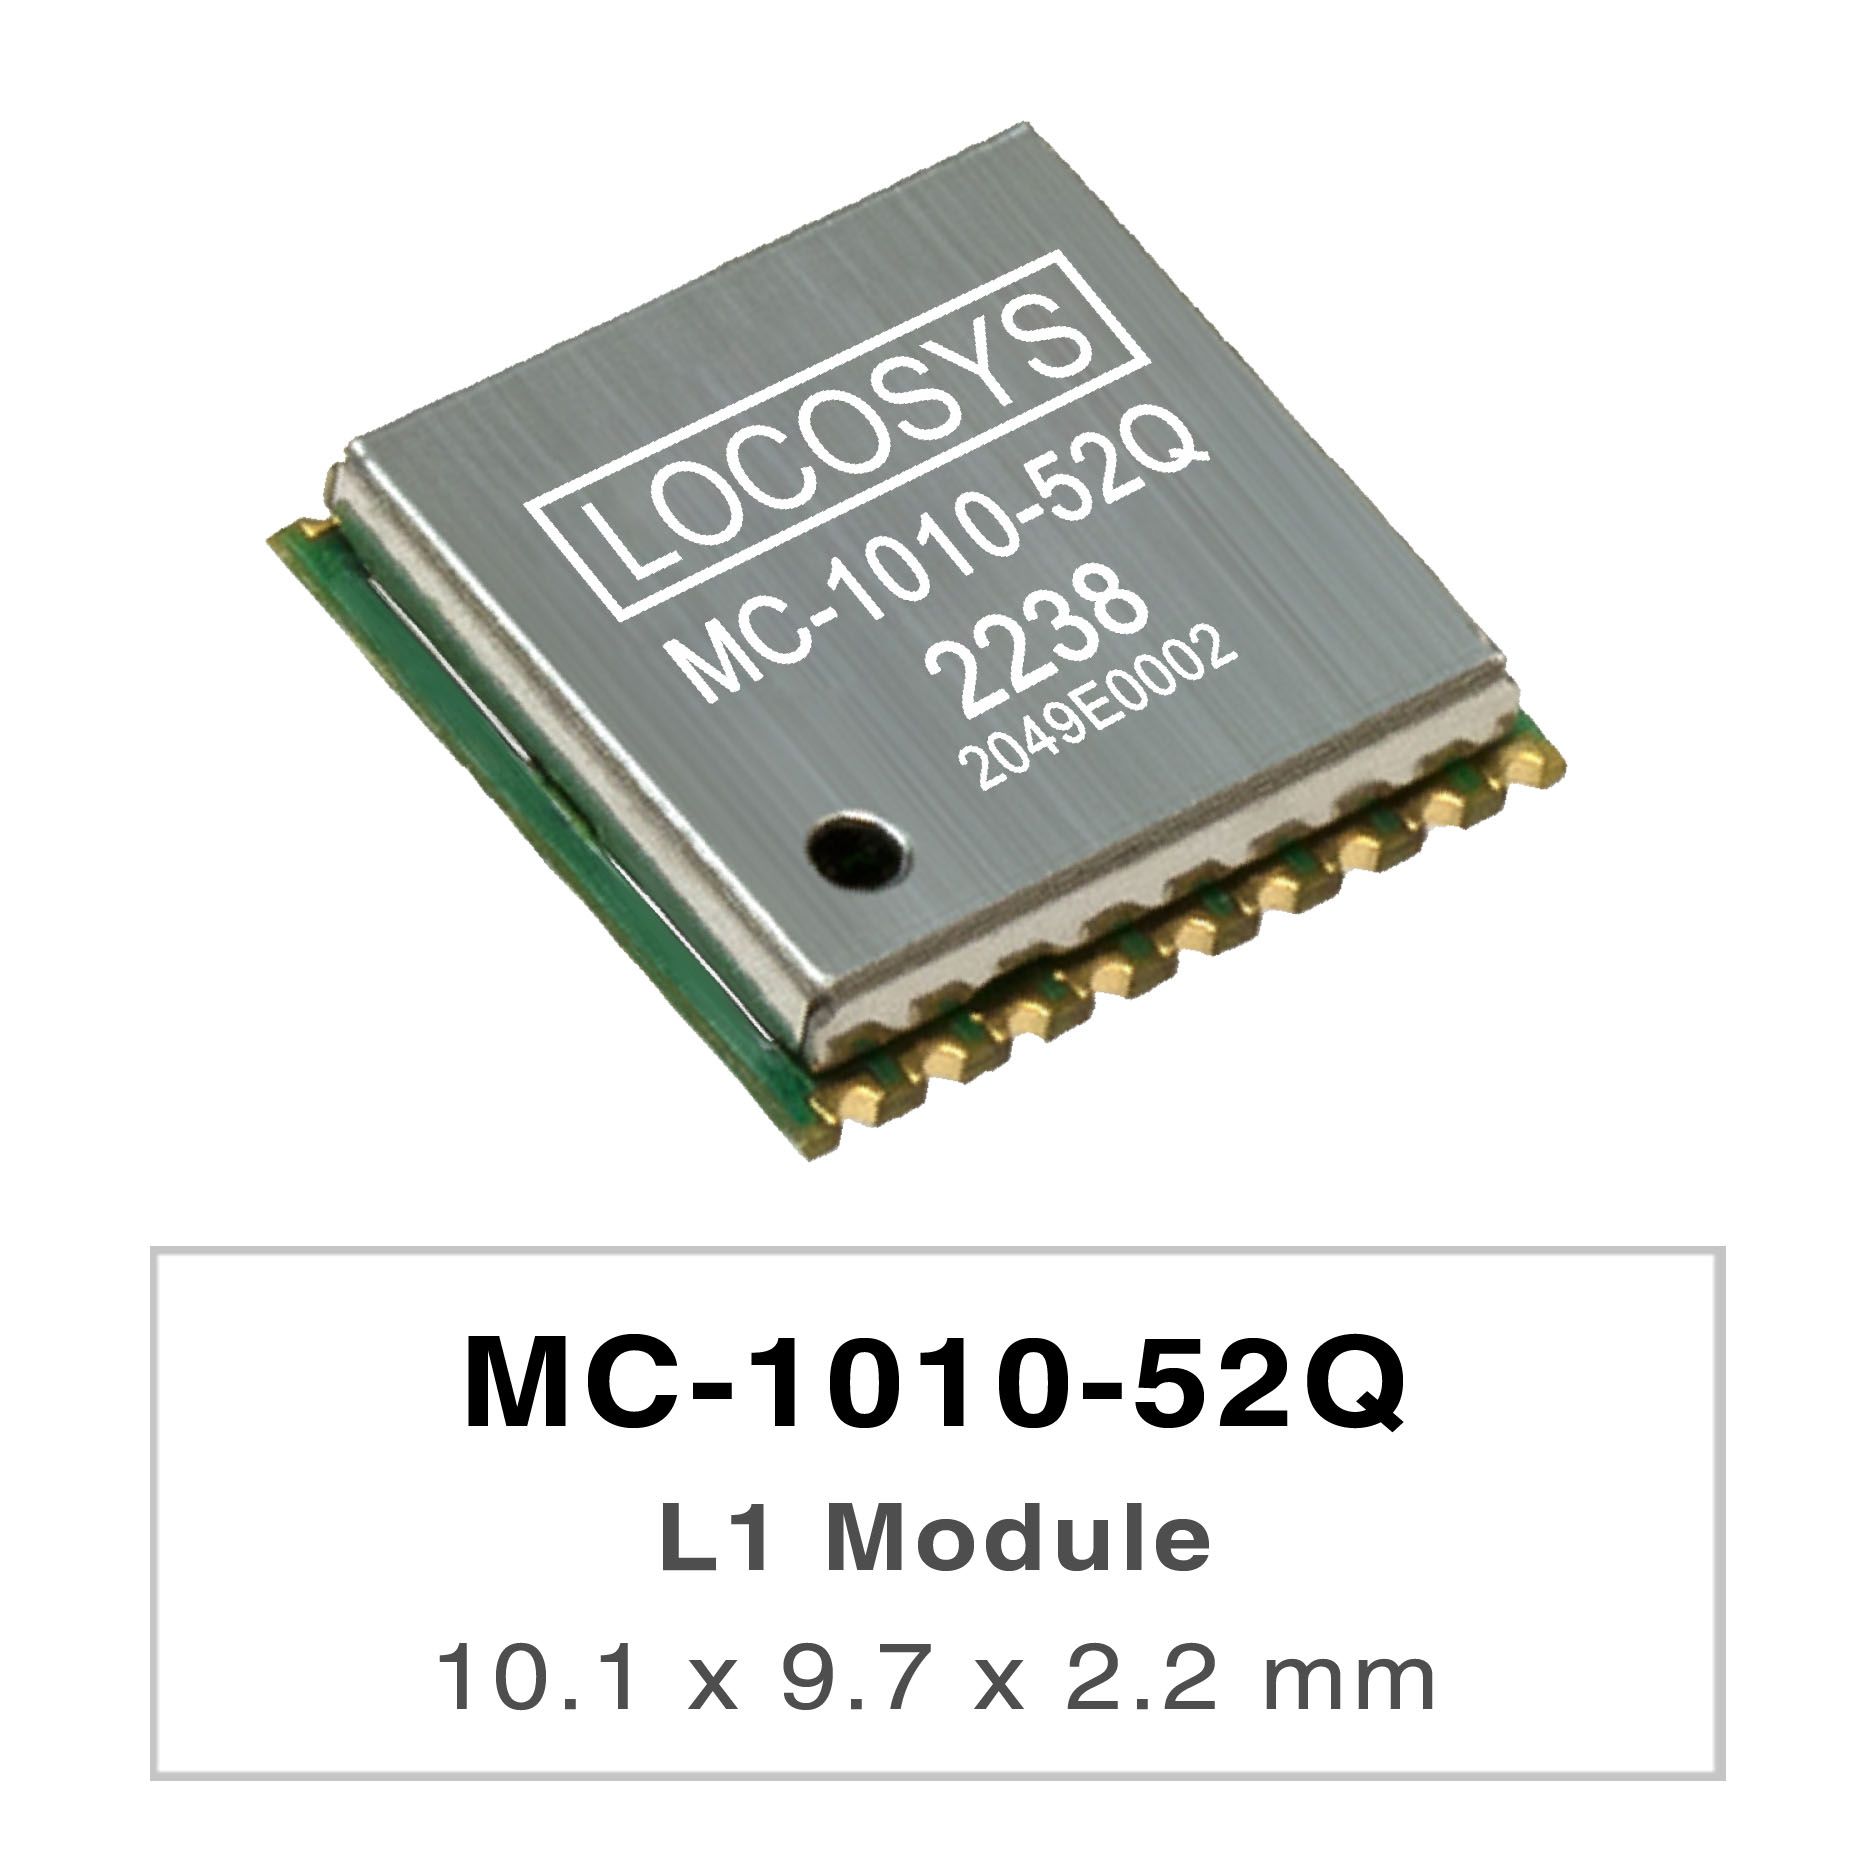 LOCOSYS MC-1010-52Q は、完全なスタンドアロン GNSS モジュールです。